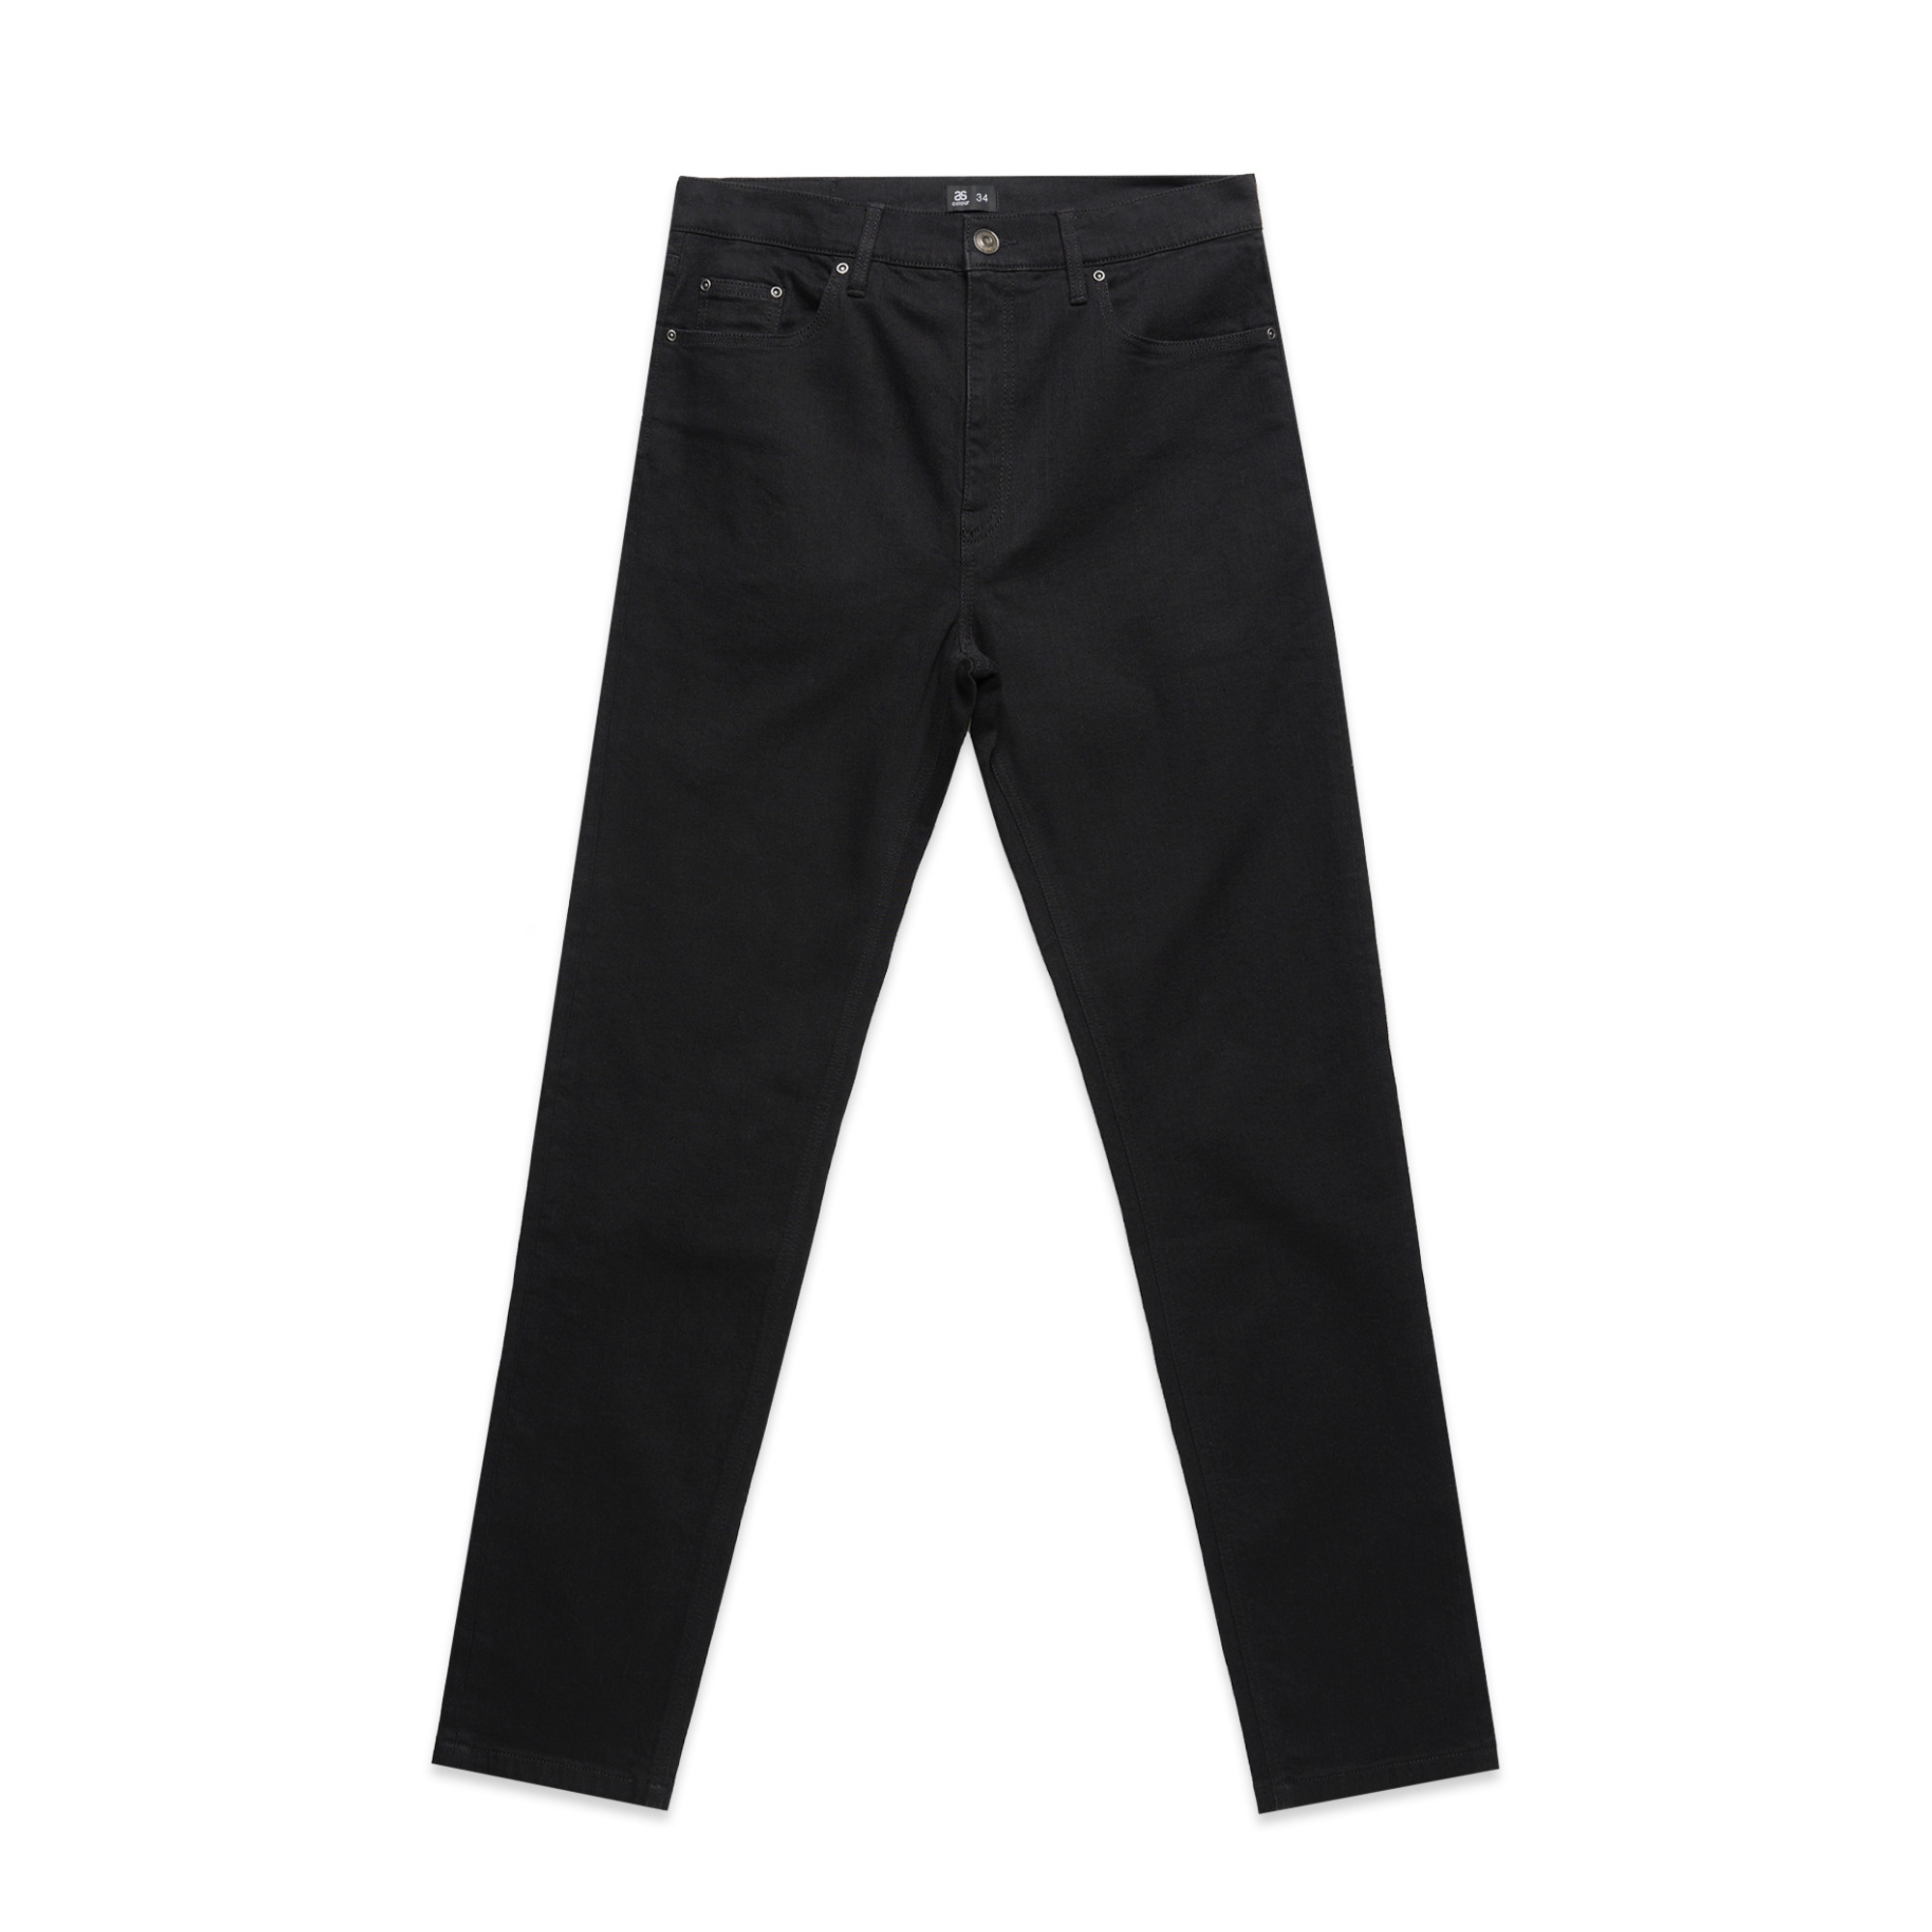 Mens Standard Jeans - 5801 - AS Colour AU